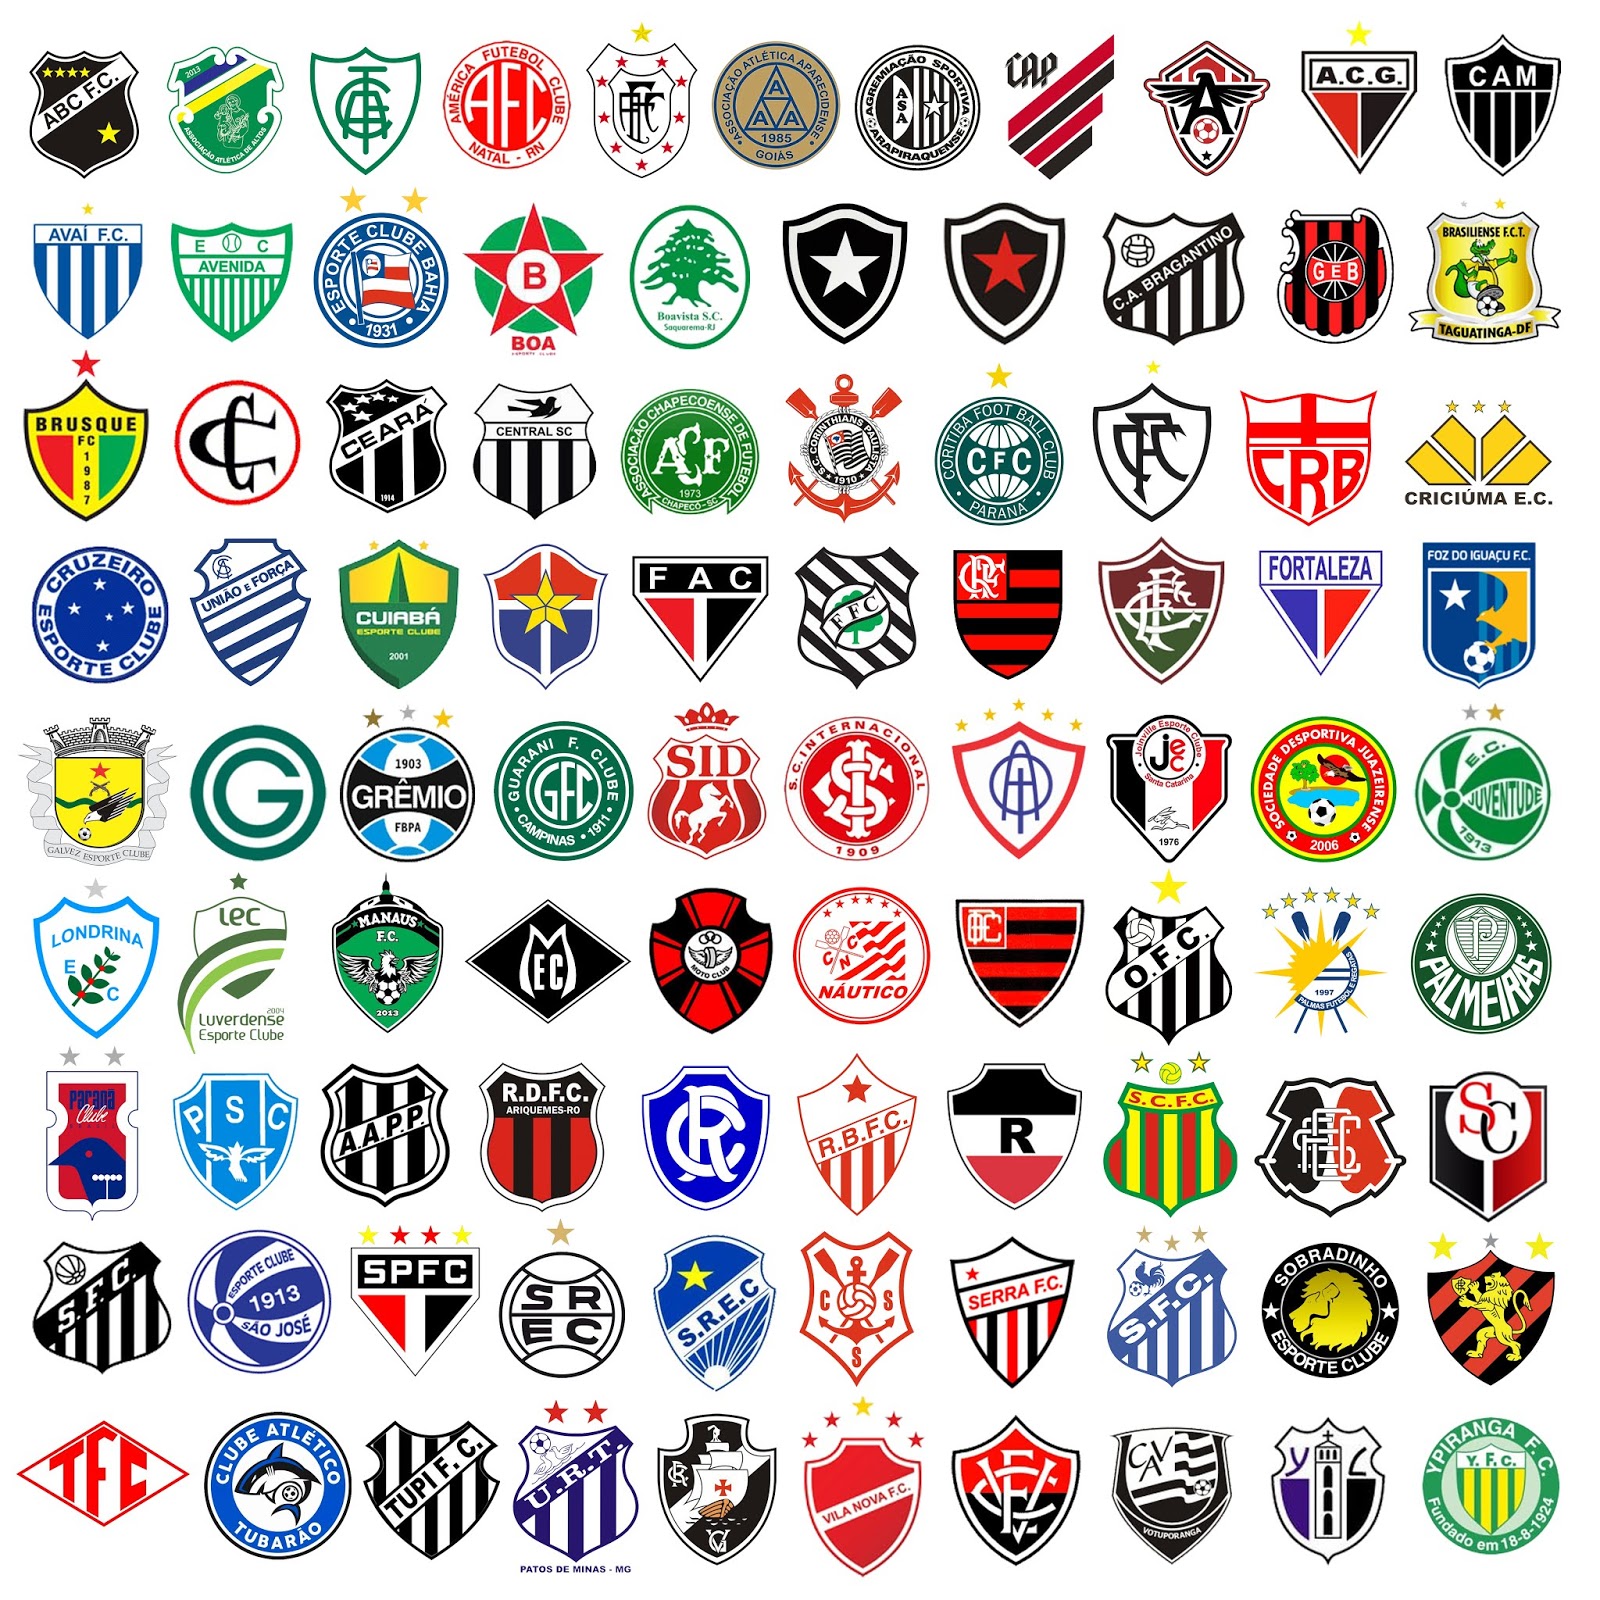 As dívidas dos clubes brasileiros de futebol em novo ranking